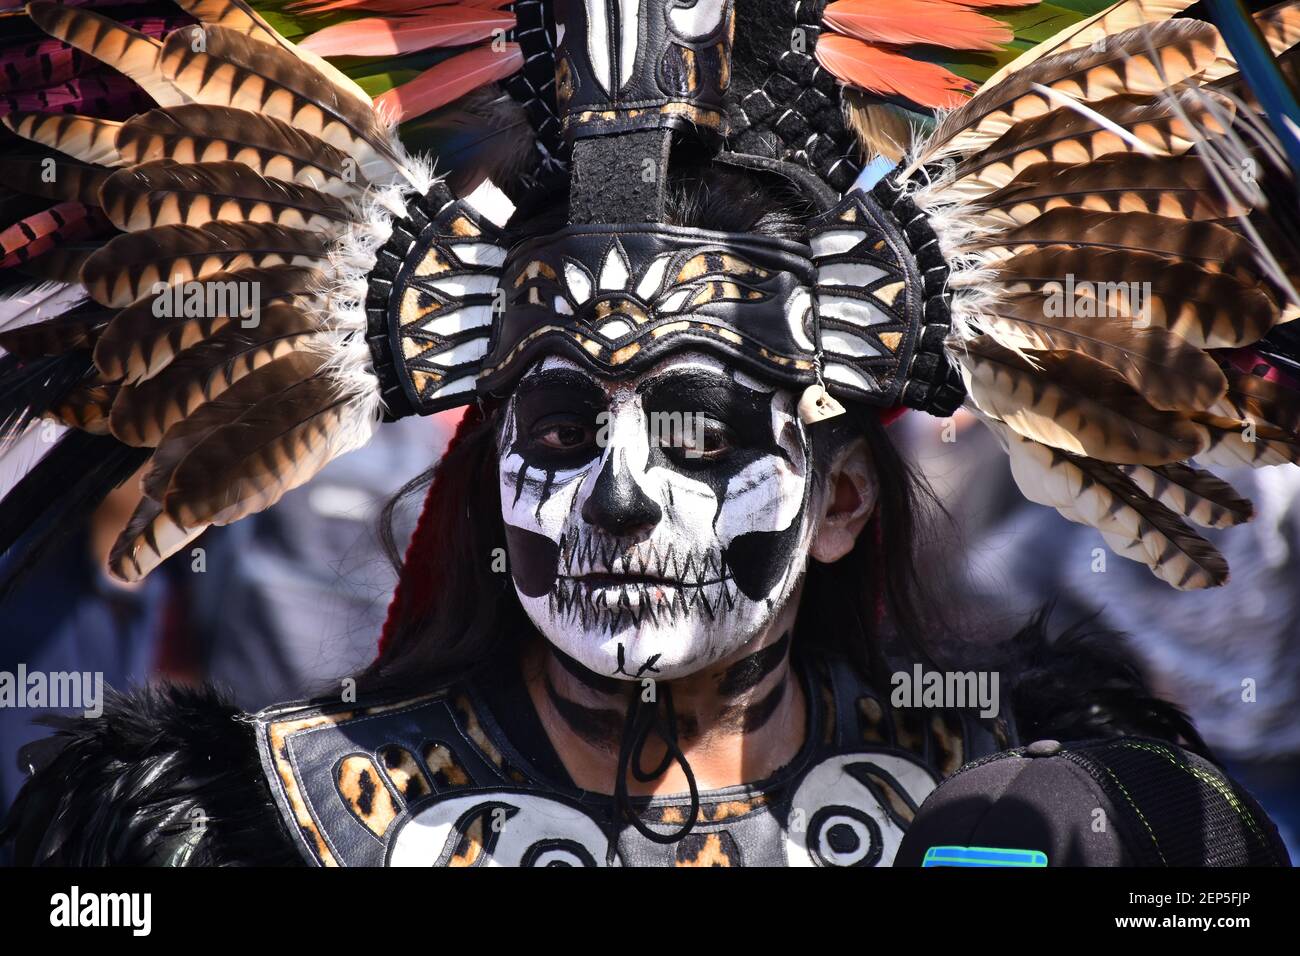 CIUDAD DE MÉXICO, MÉXICO - 1 DE NOVIEMBRE: Una niña con el vestido  prehispánico posará para hacer fotos durante la mega ofrenda como parte de  la celebración de Dia de muertos para